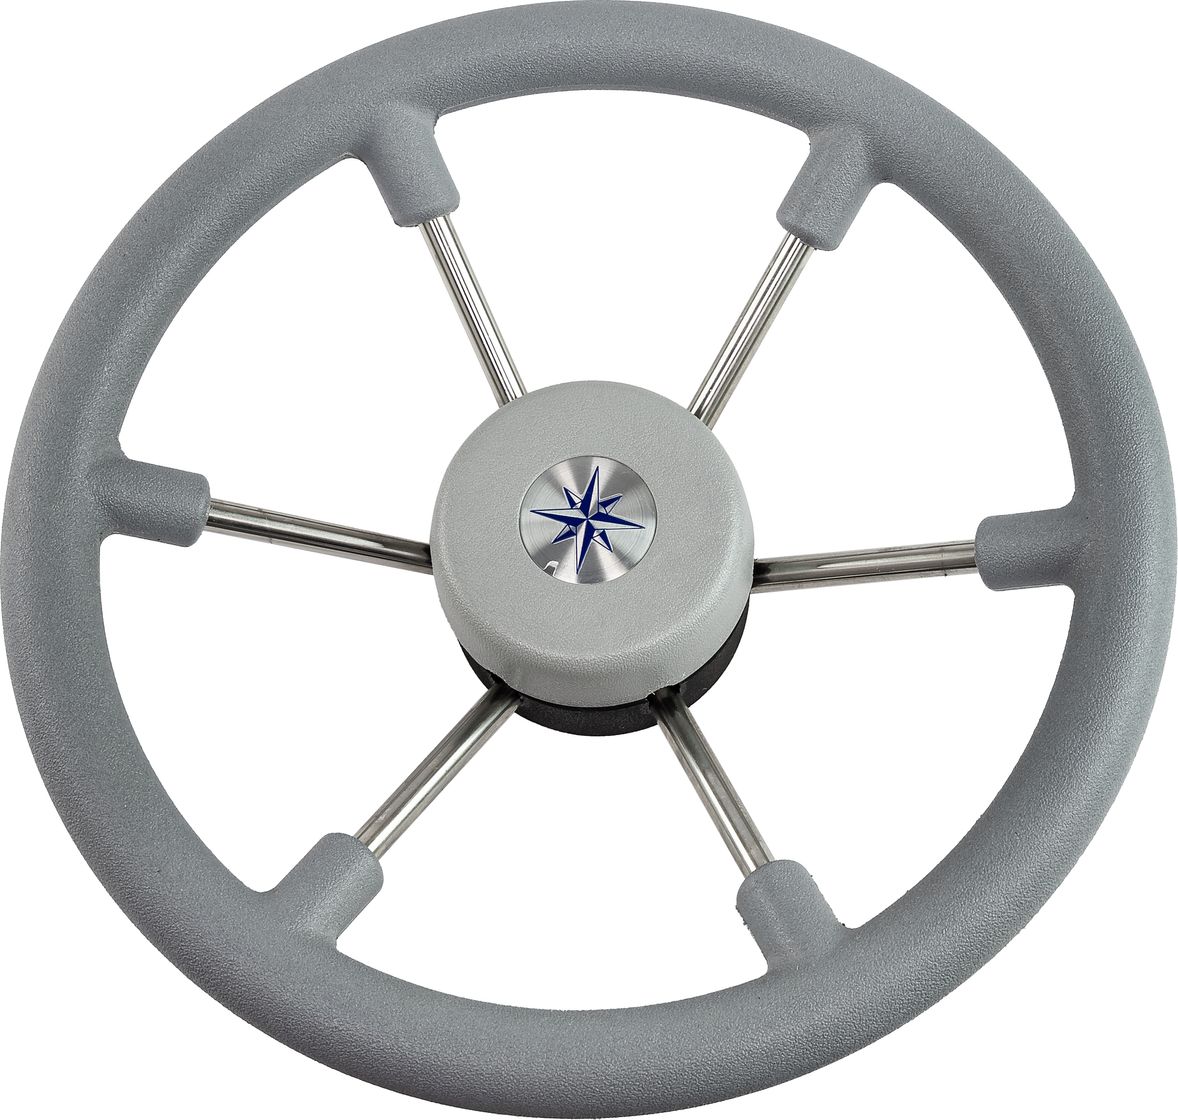 Рулевое колесо LEADER TANEGUM серый обод серебряные спицы д. 330 мм VN7330-03 рулевое колесо leader wood деревянный обод серебряные спицы д 360 мм vn7360 33